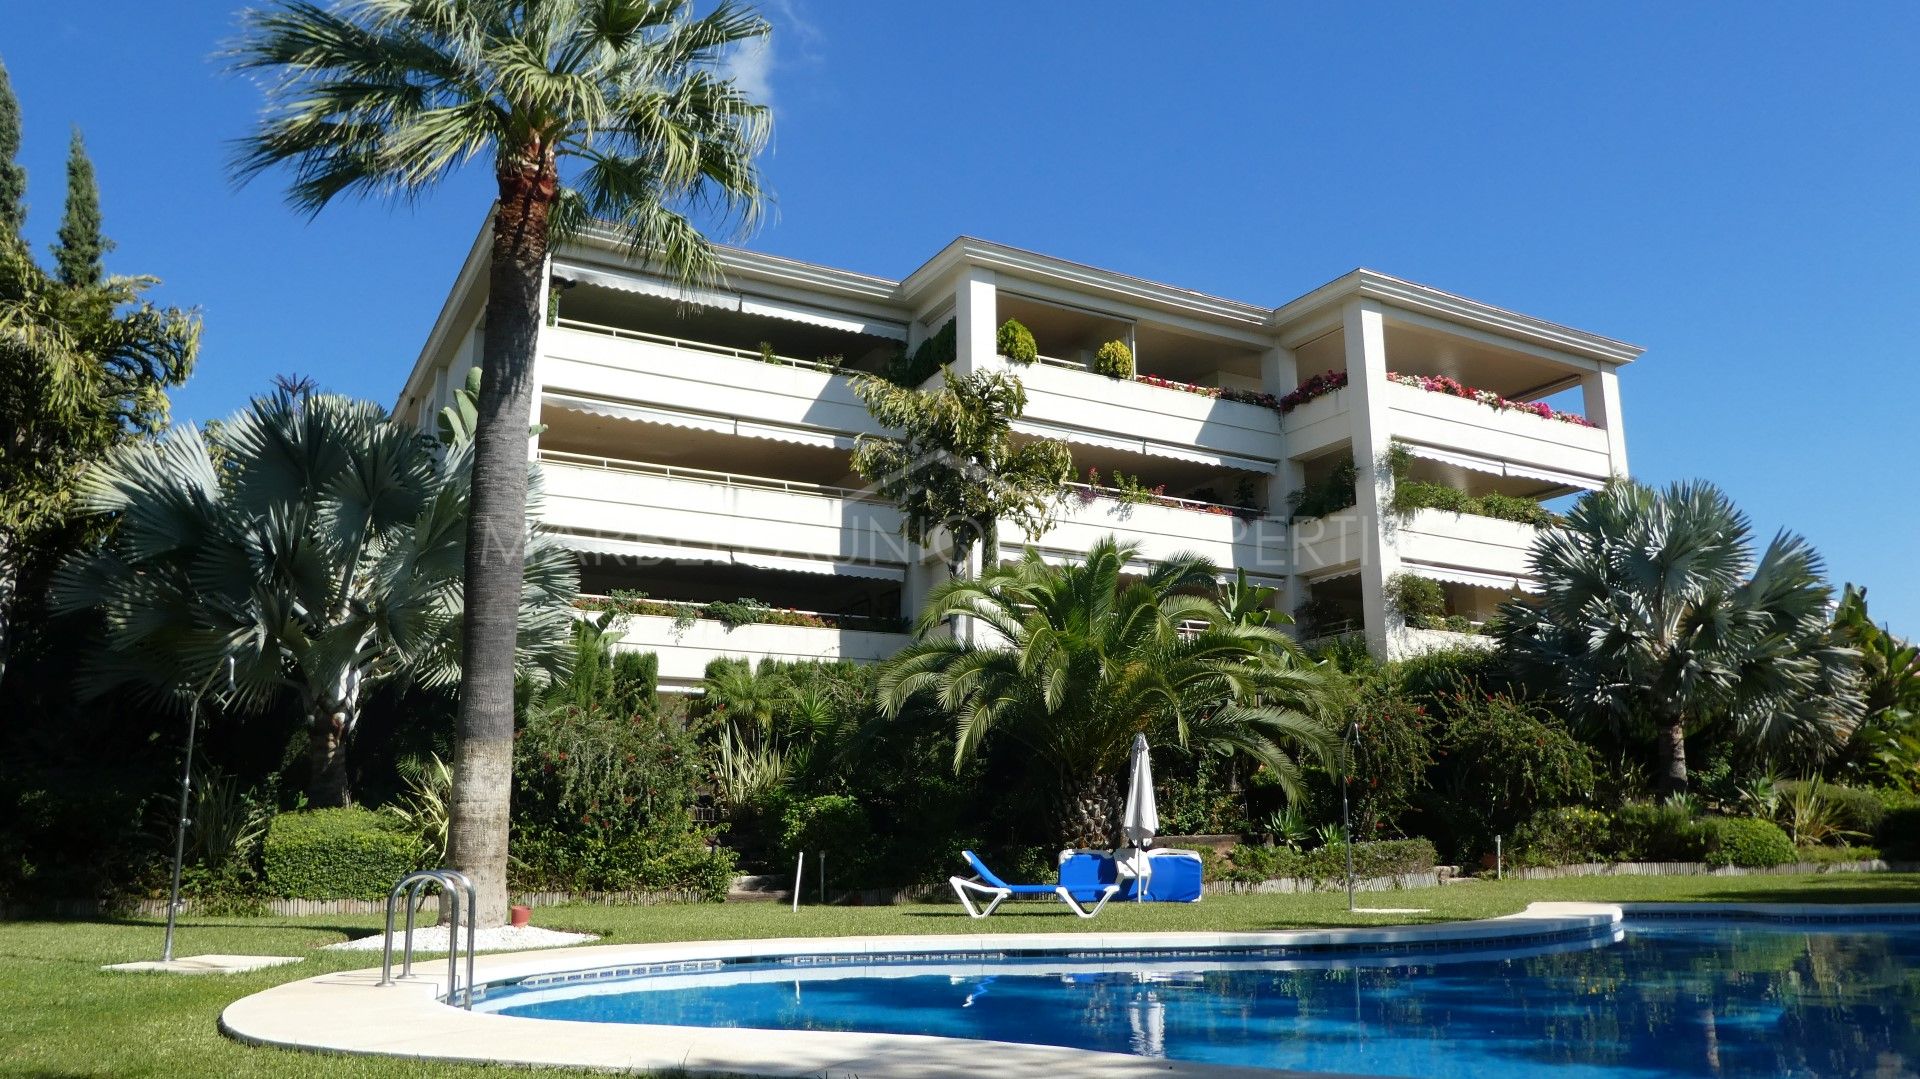 Un precioso y amplio apartamento con 3 dormitorios en Marbella centro